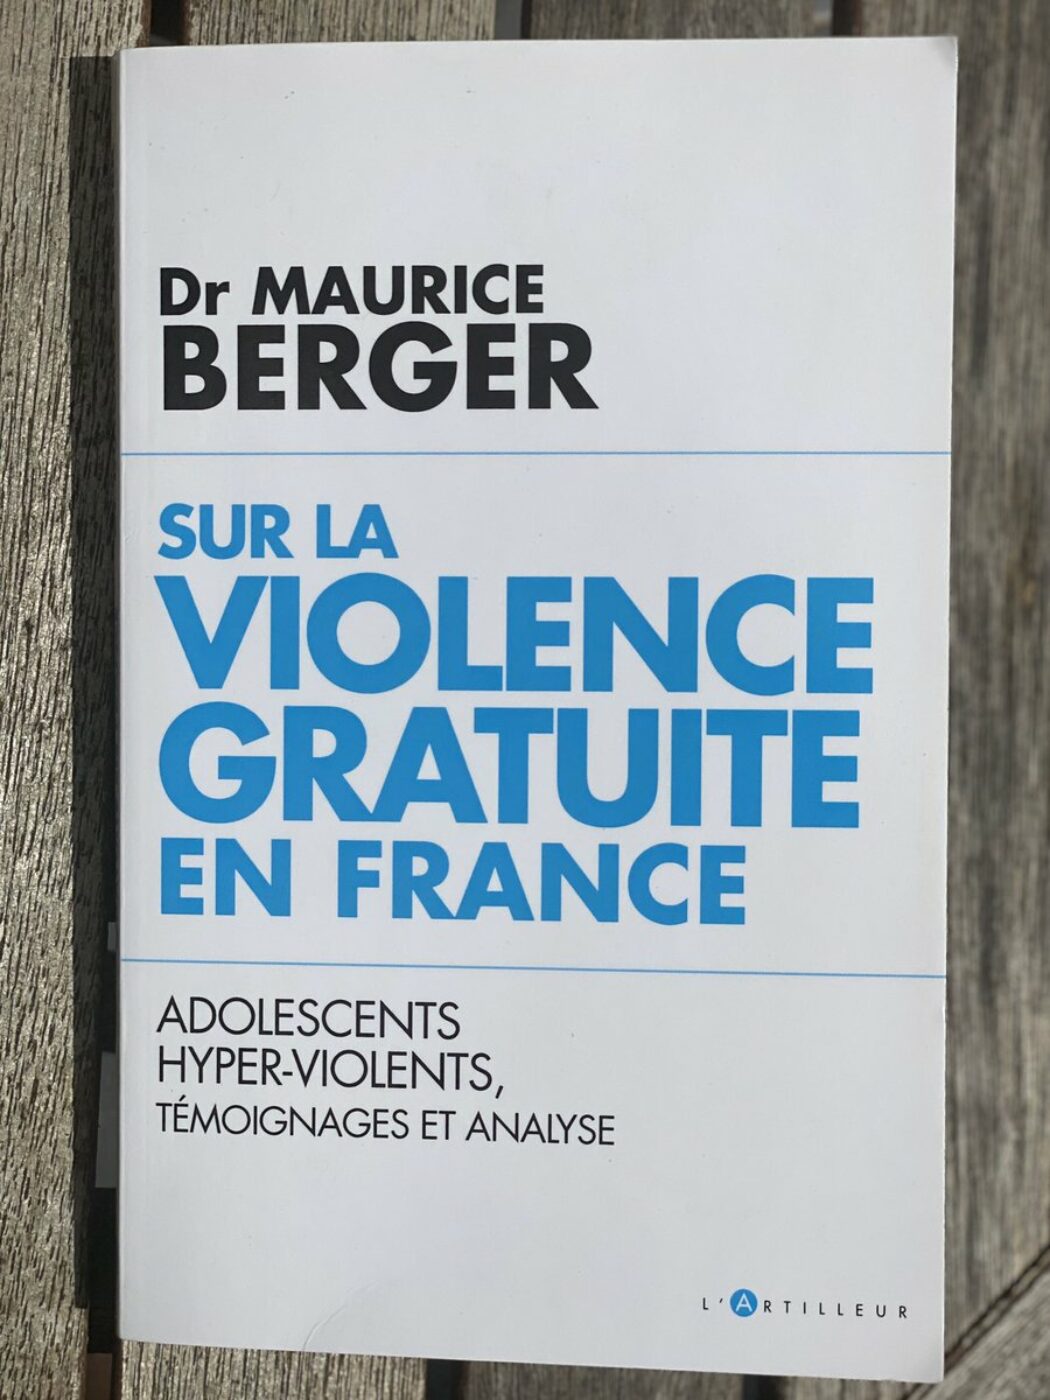 Extraits de “Sur la violence gratuite en France” du pédopsychiatre Maurice Berger